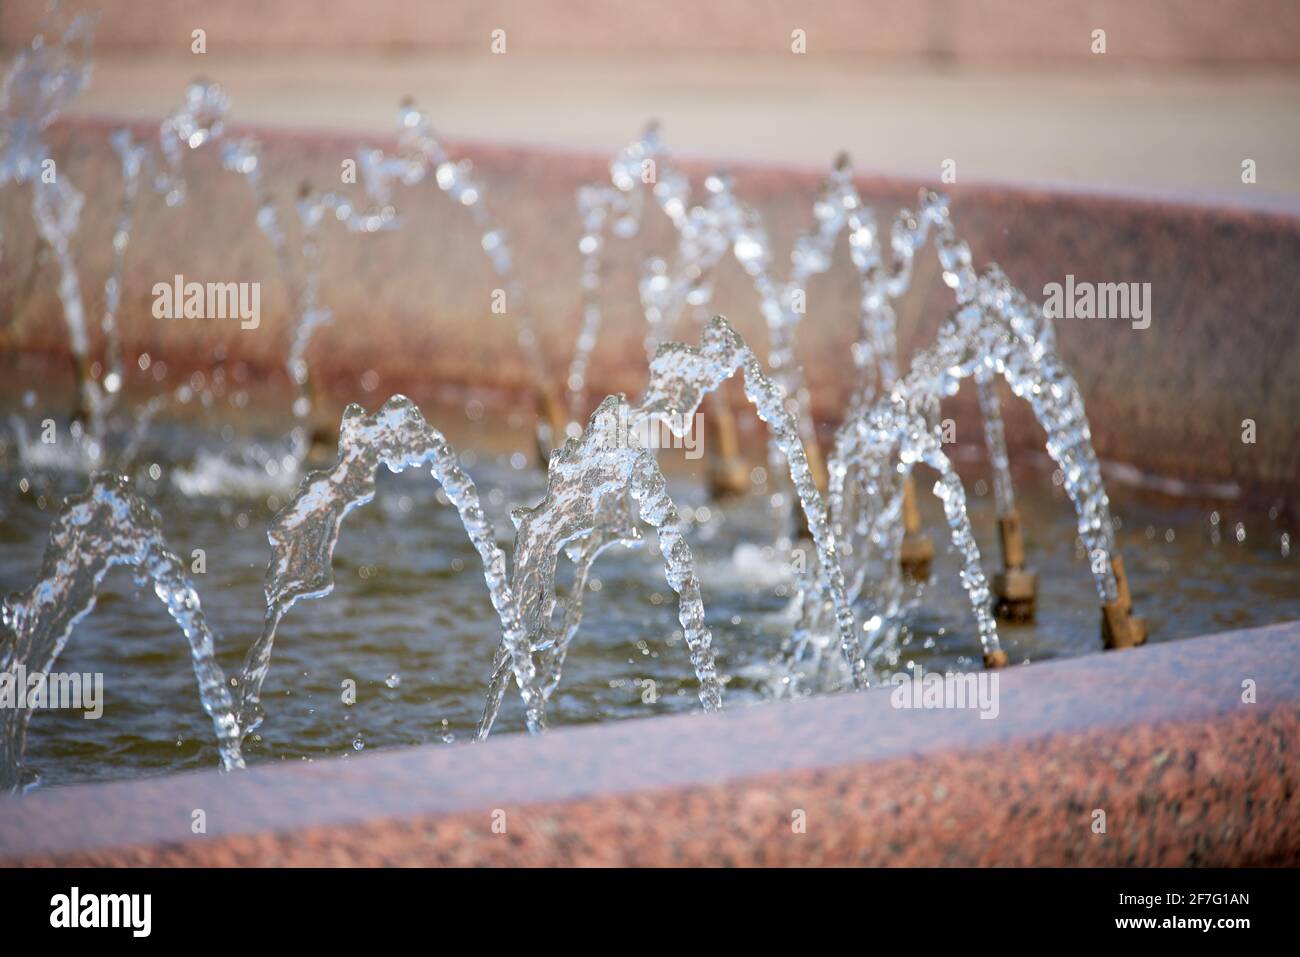 Éclaboussures d'eau dans la fontaine. L'effet de mouvement figé est obtenu par un appareil photo à vitesse d'obturation rapide Banque D'Images